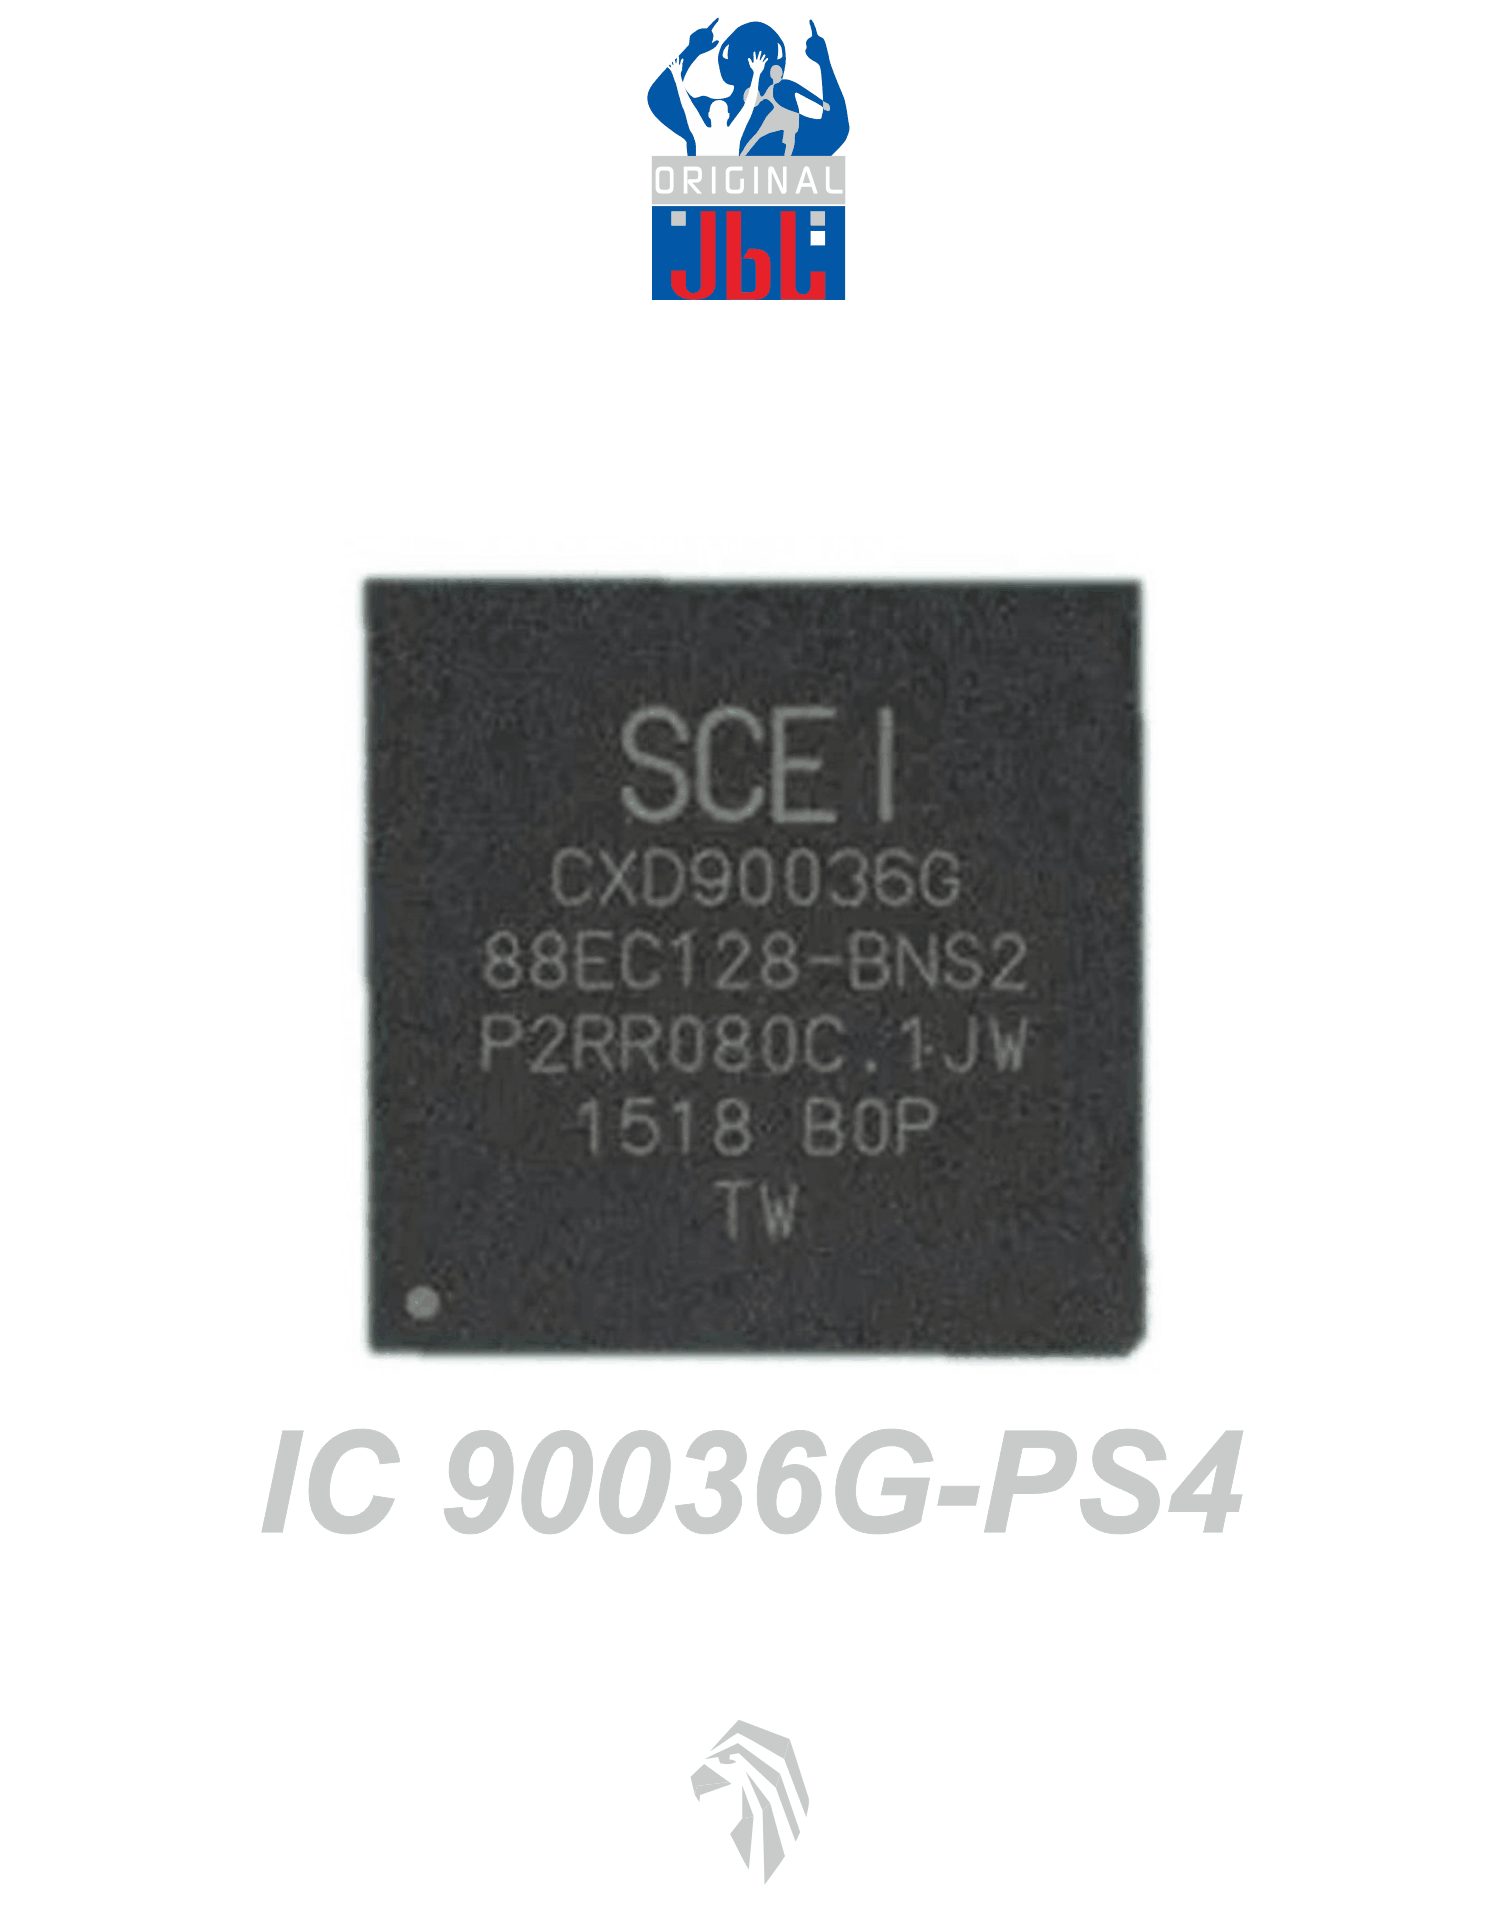  آی سی مدار  PS4 90036G